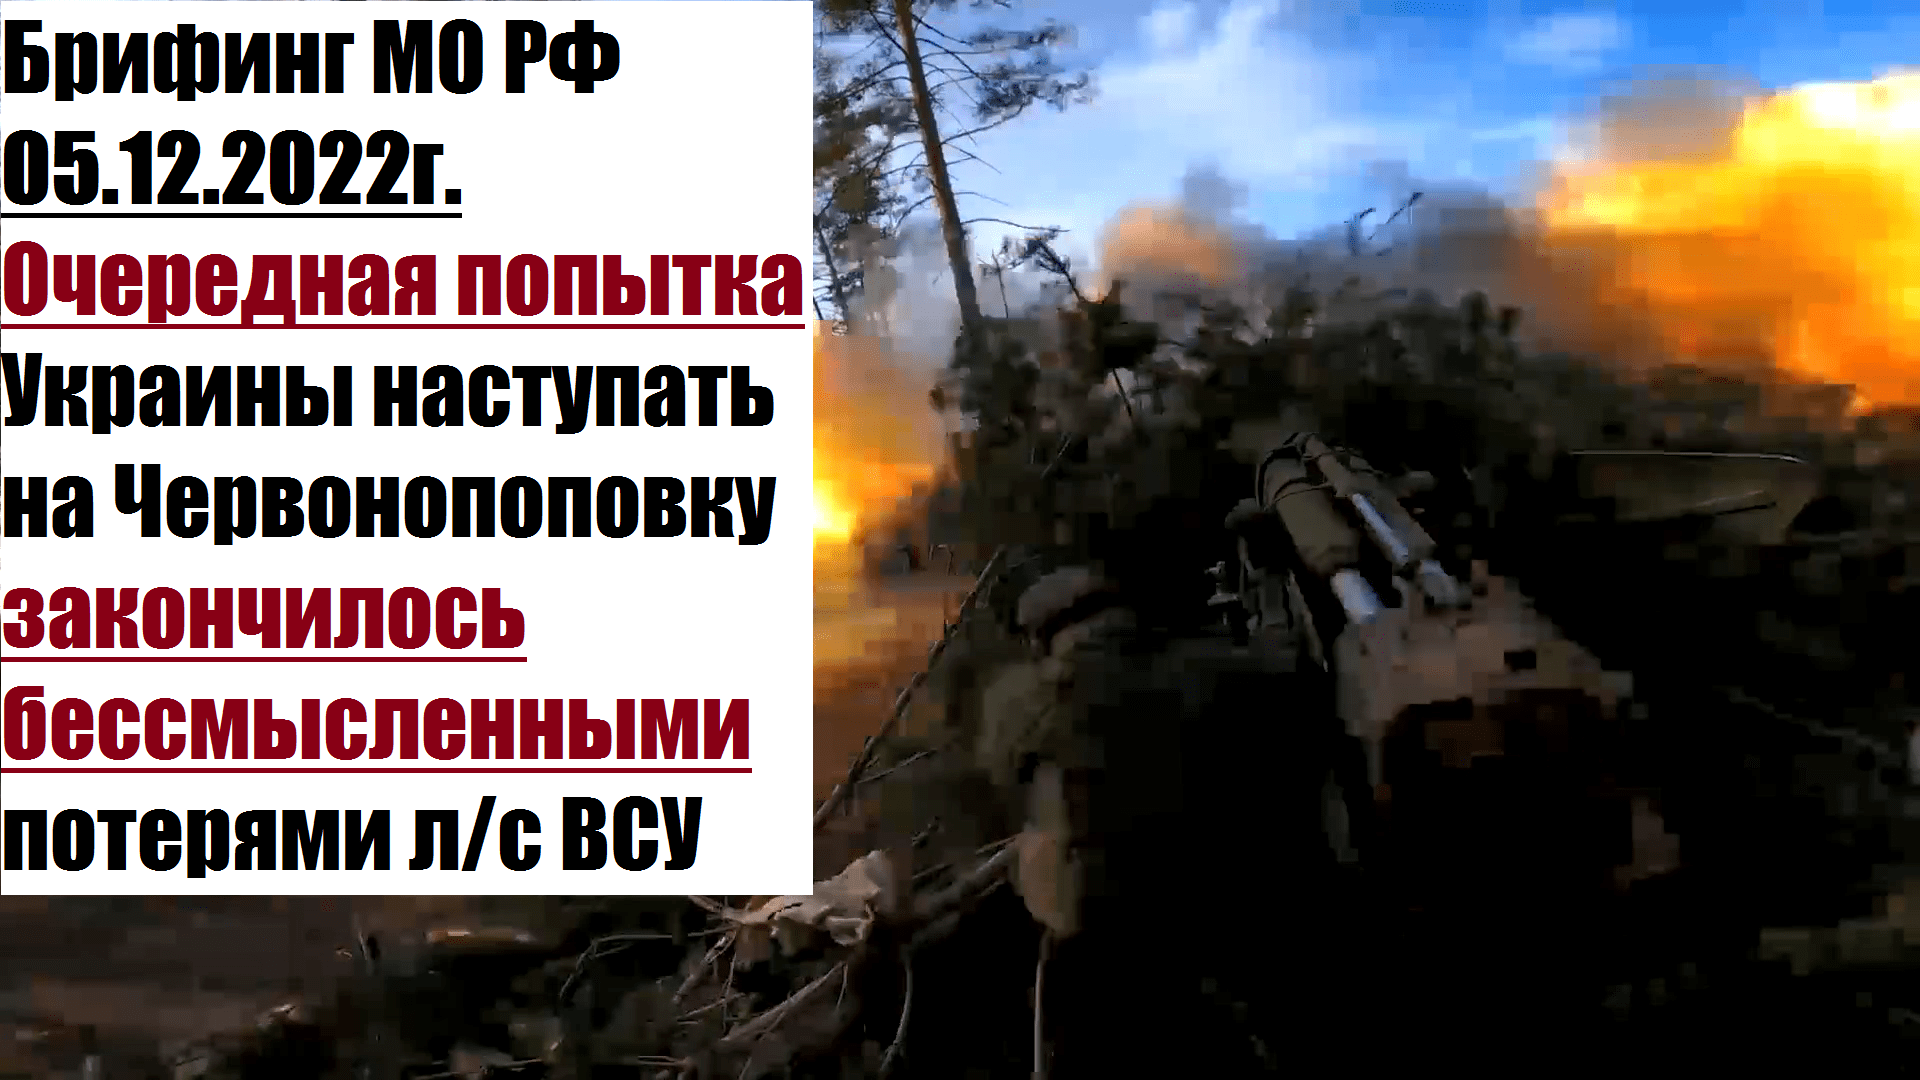 Потери на сво в день. Ротная тактическая группа ВСУ. Уничтожено потери России. Подбитые русские танки на Украине.